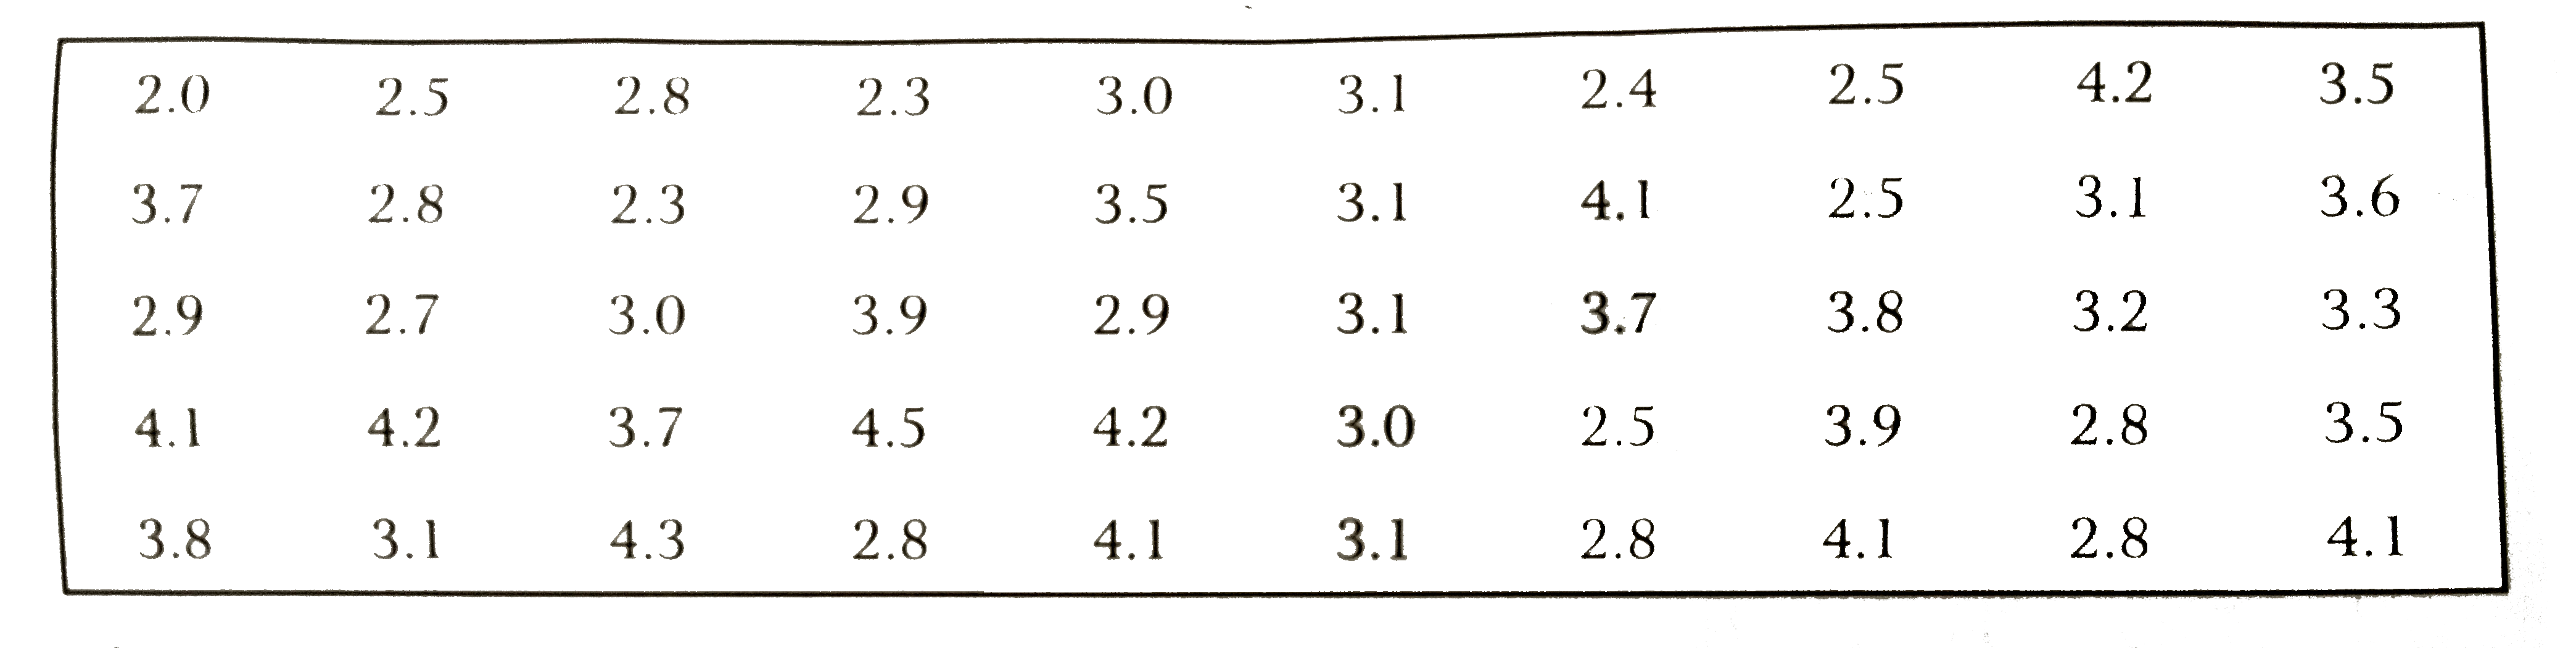 50 बच्चों के जन्म के समय के बार (किग्रा में) निम्नलिखित हैं       इनसे एक सम्मिलित रूप की वर्गीकृत सारणी बनाइए जिसमें प्रत्येक वर्ग की चौड़ाई 0.3 किग्रा हो| प्रत्येक वर्ग की सत्य वर्ग सीमाएँ भी ज्ञात कीजिए |